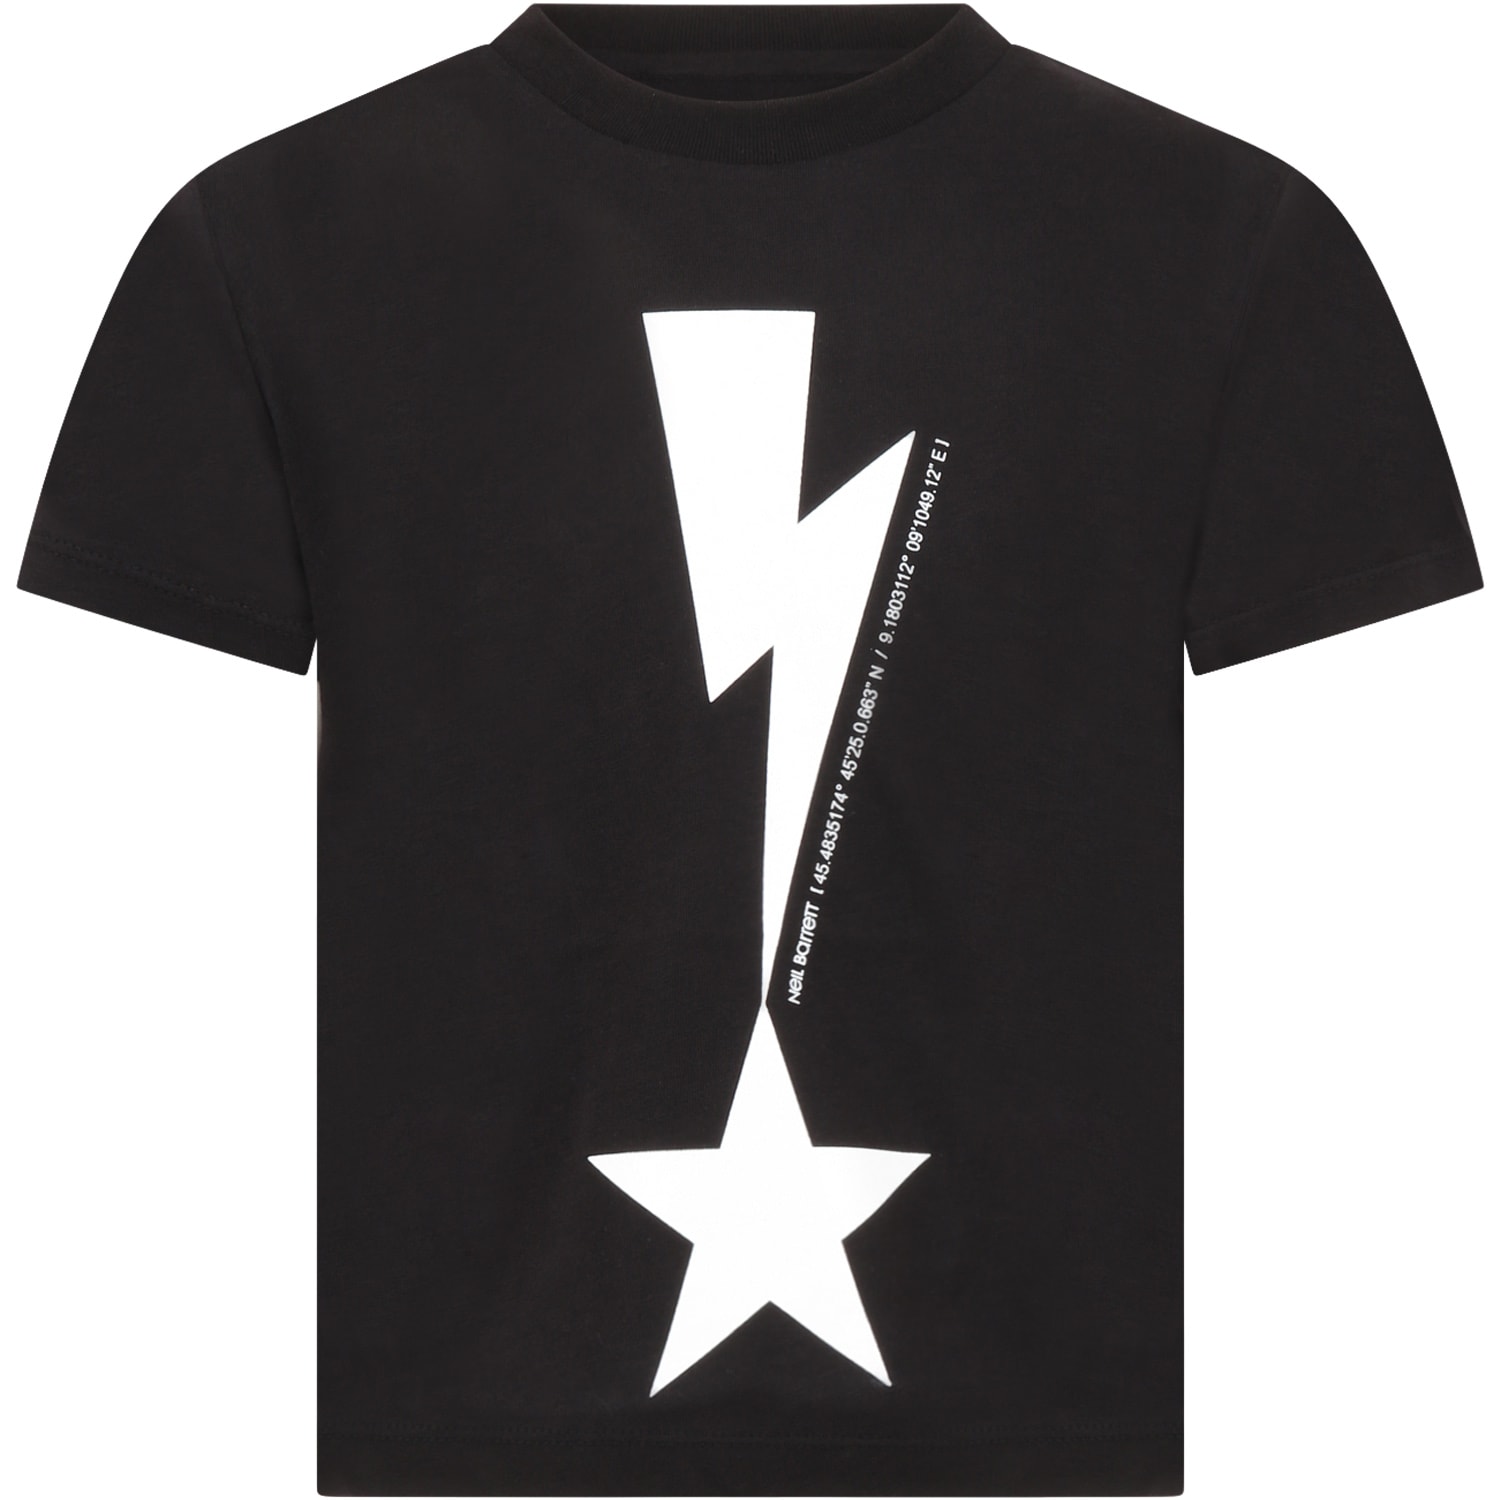 Neil Barrett Black T-shirt For Boy With Thunderbolt